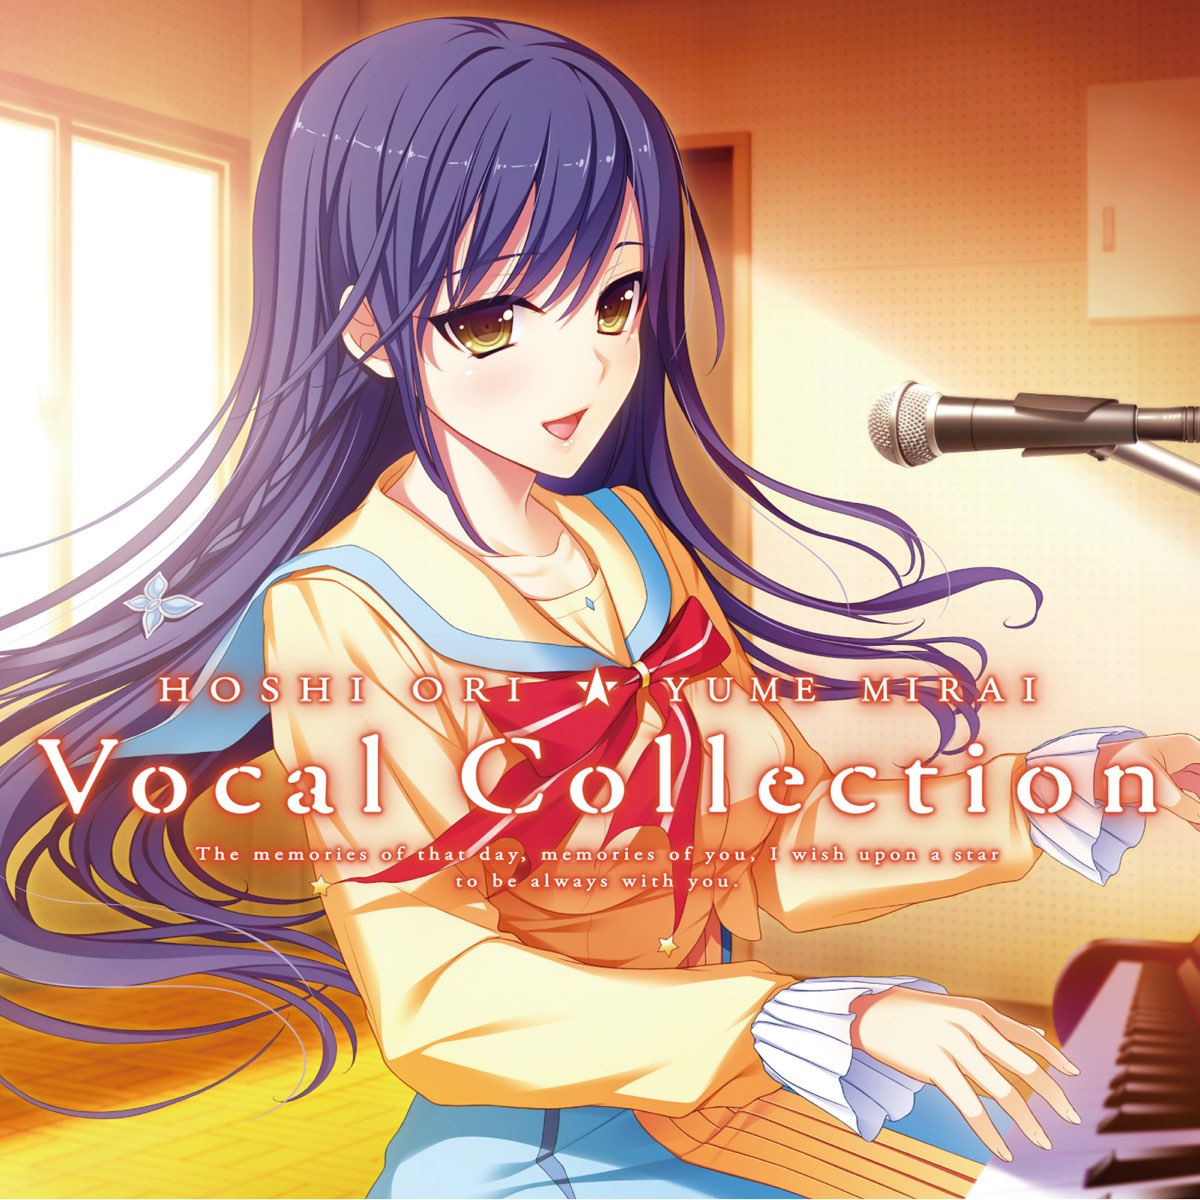 星織ユメミライ Vocal Collection De Visualart S Tone Work S En Itunes